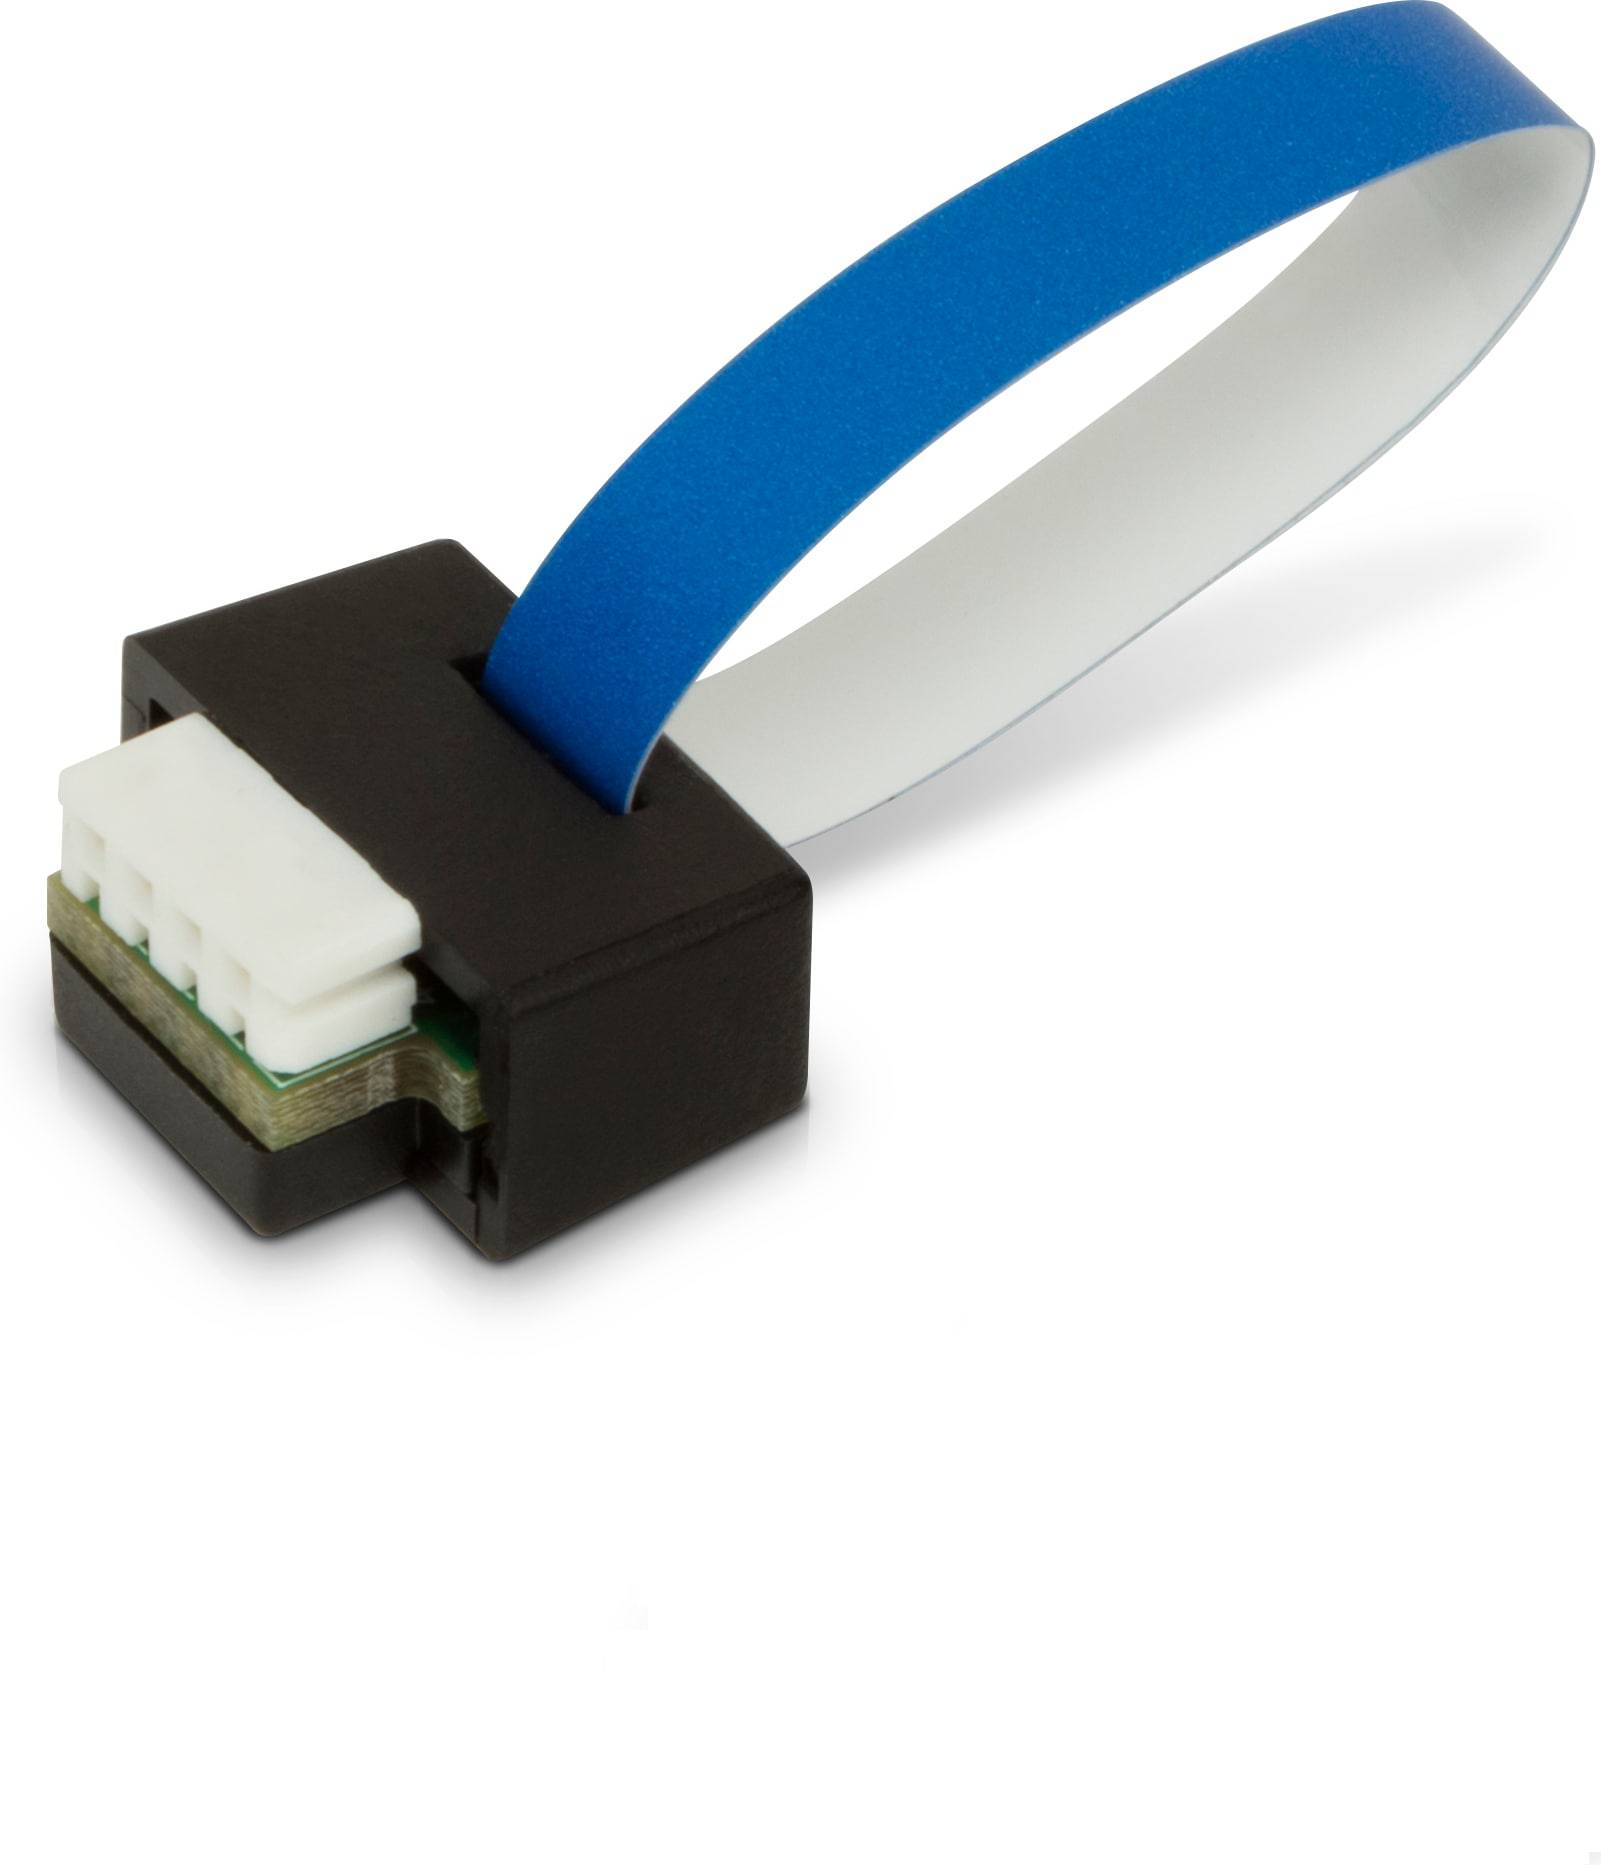 Rca Informatique - Image du produit : INTEL VROC NVME SSD STANDARD CTLR MODULE